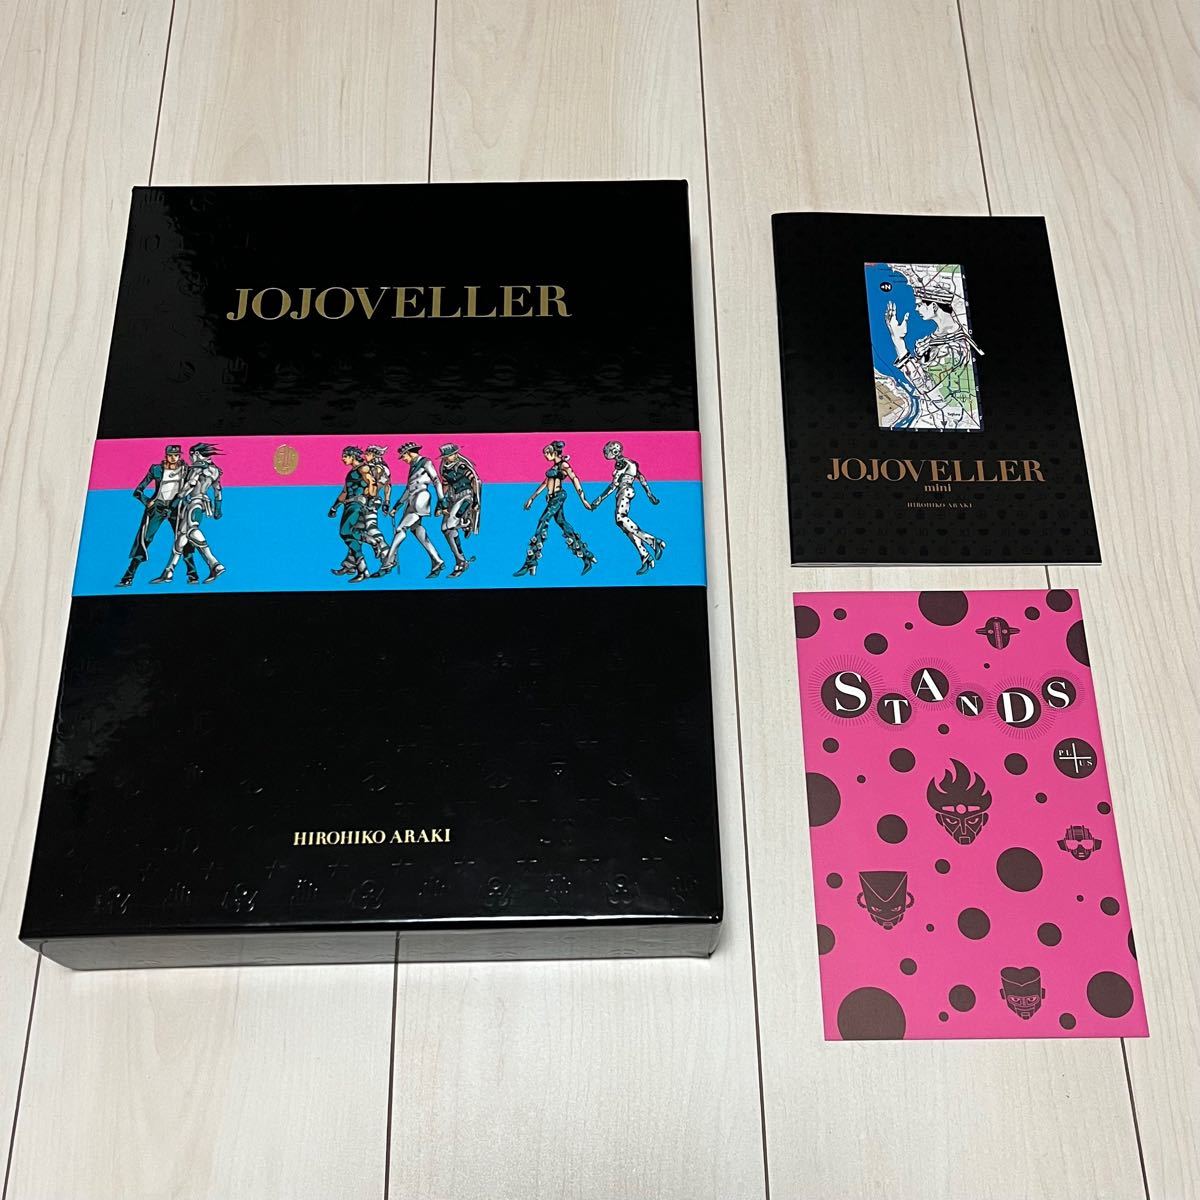 ジョジョの奇妙な冒険 JOJOVELLER 完全限定版 ジョジョベラー ミニ